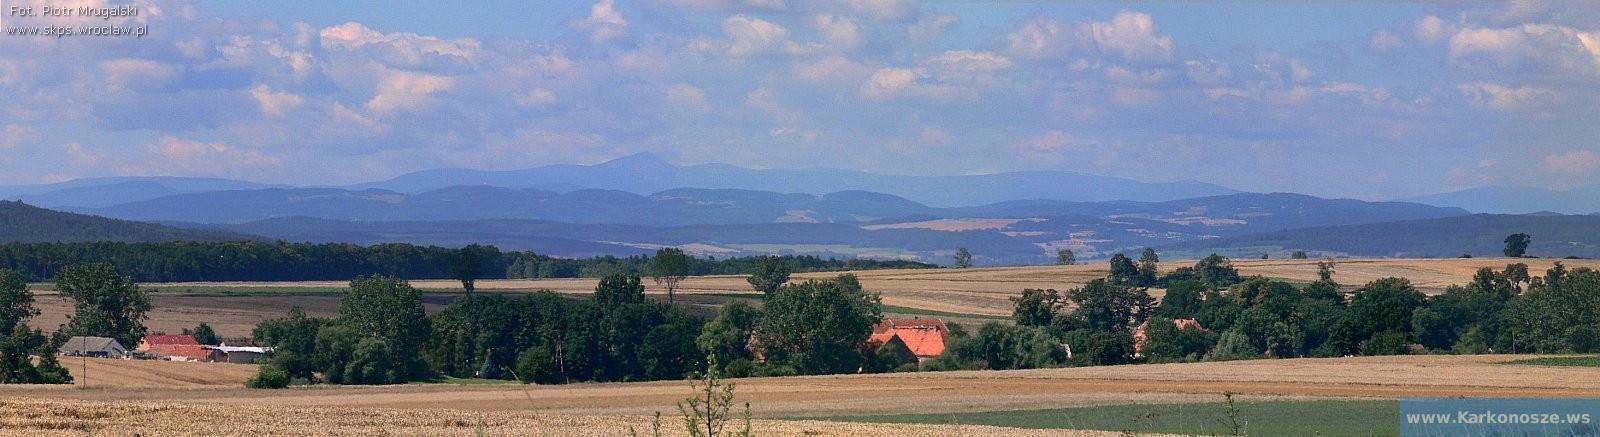 Karkonosze z okolic wsi Marcinowice